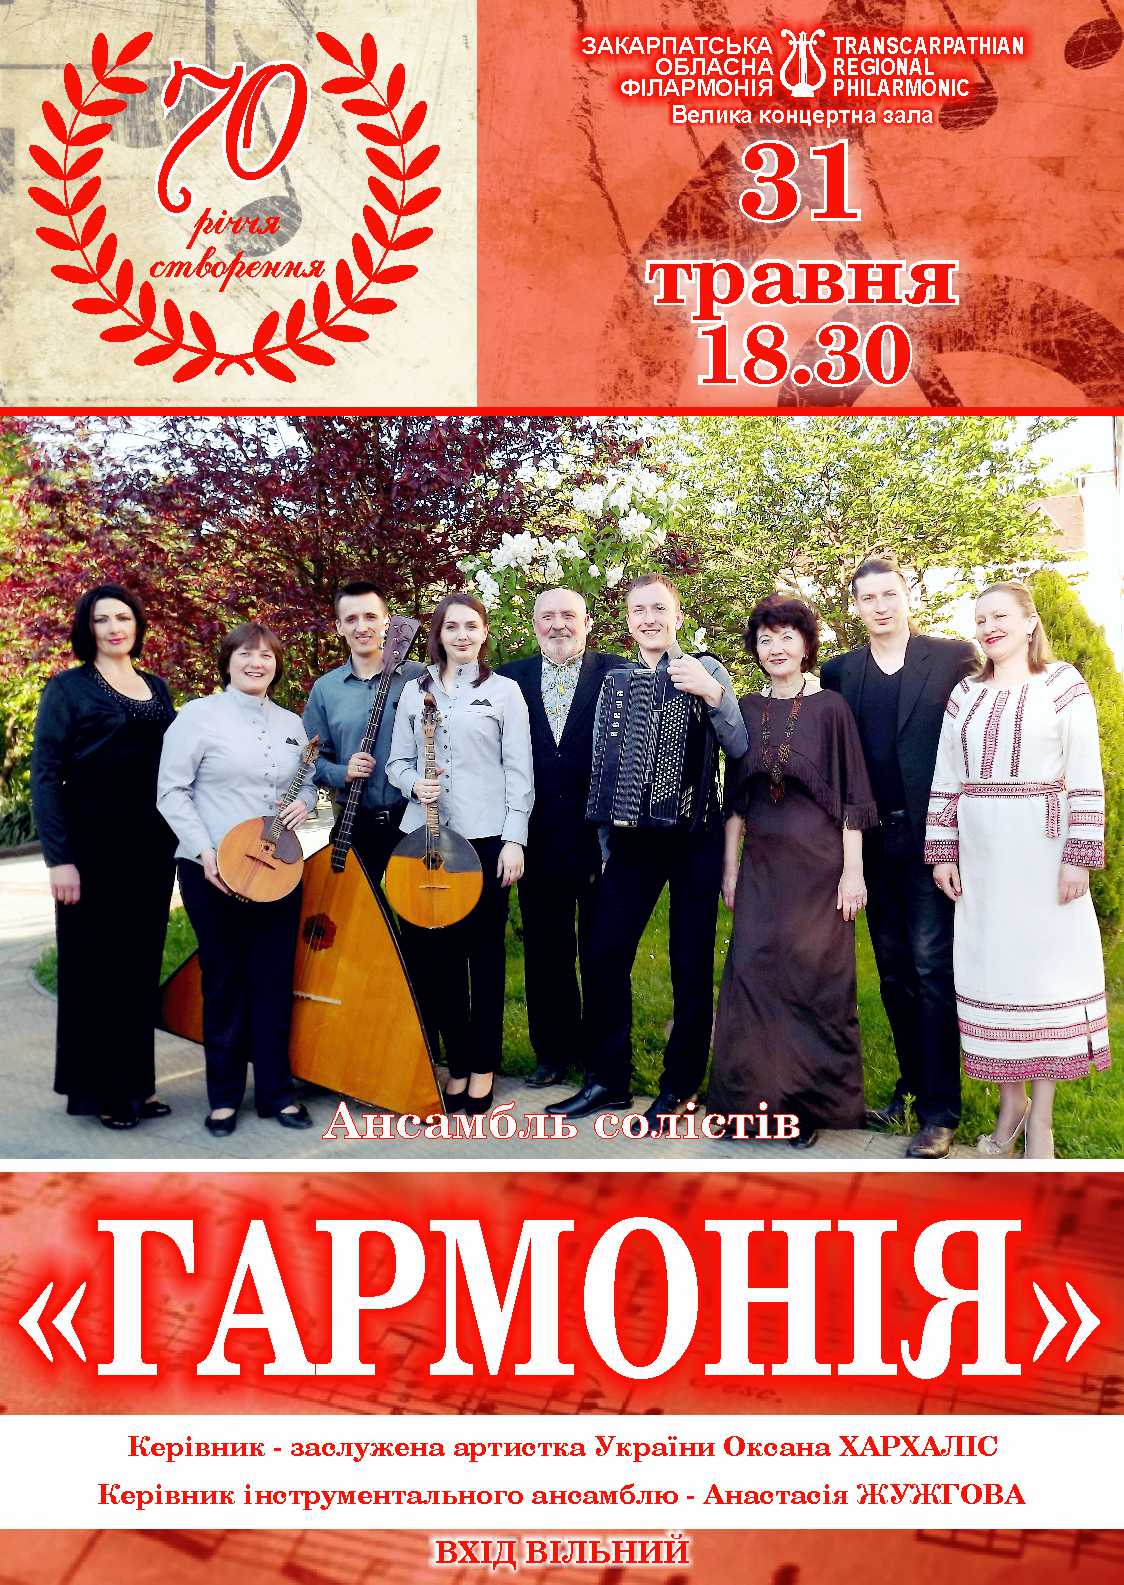 Цей рік є ювілейним для одного з найстаріших колективів Закарпатської обласної філармонії – Ансамблю солістів «Гармонія».